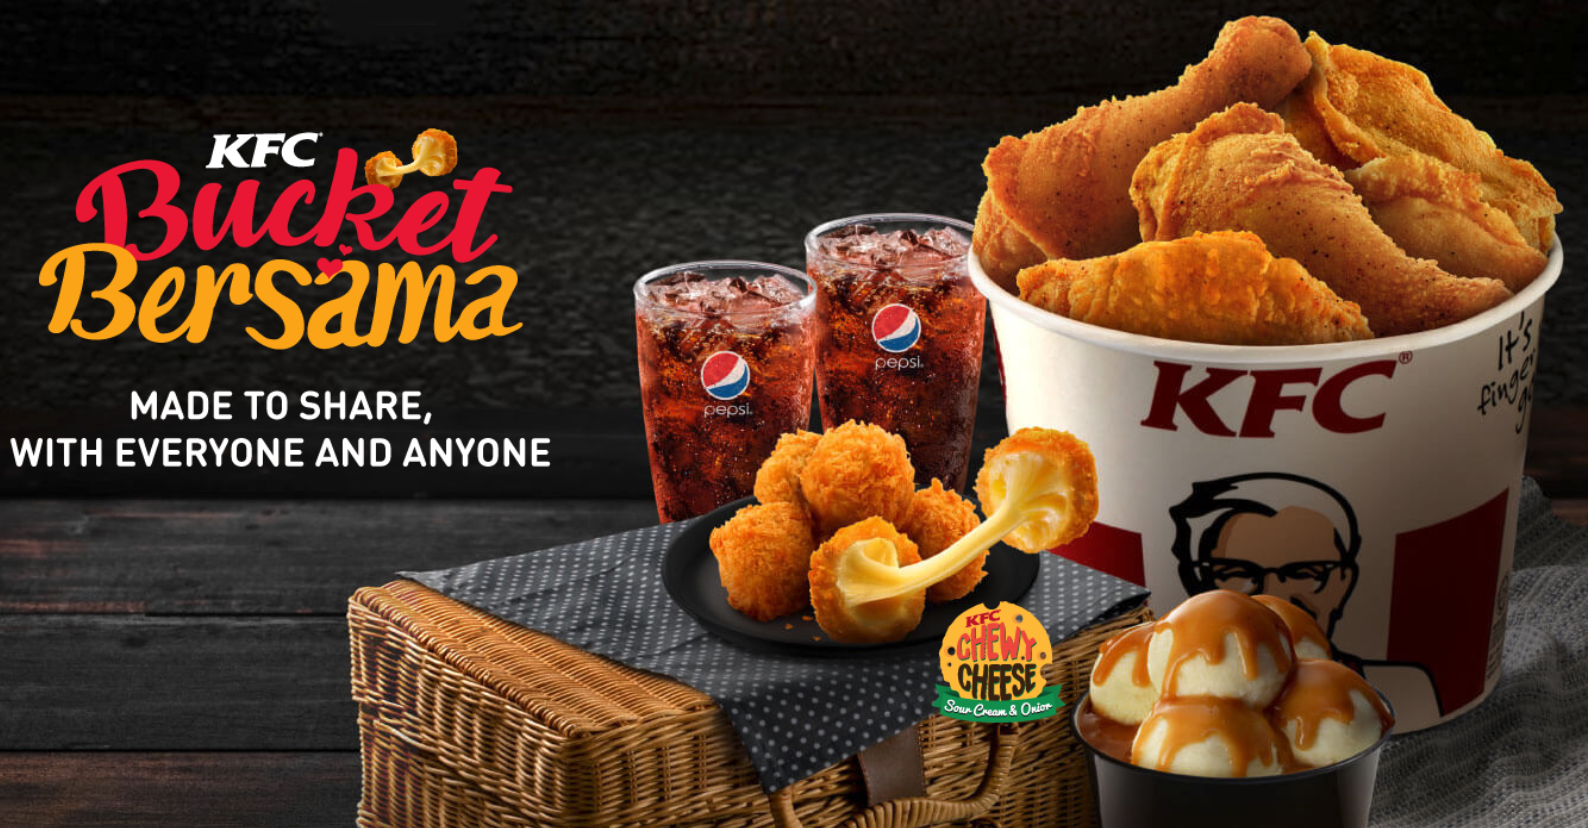 Harga KFC Bucket Bersama - Senarai Harga Makanan di Malaysia